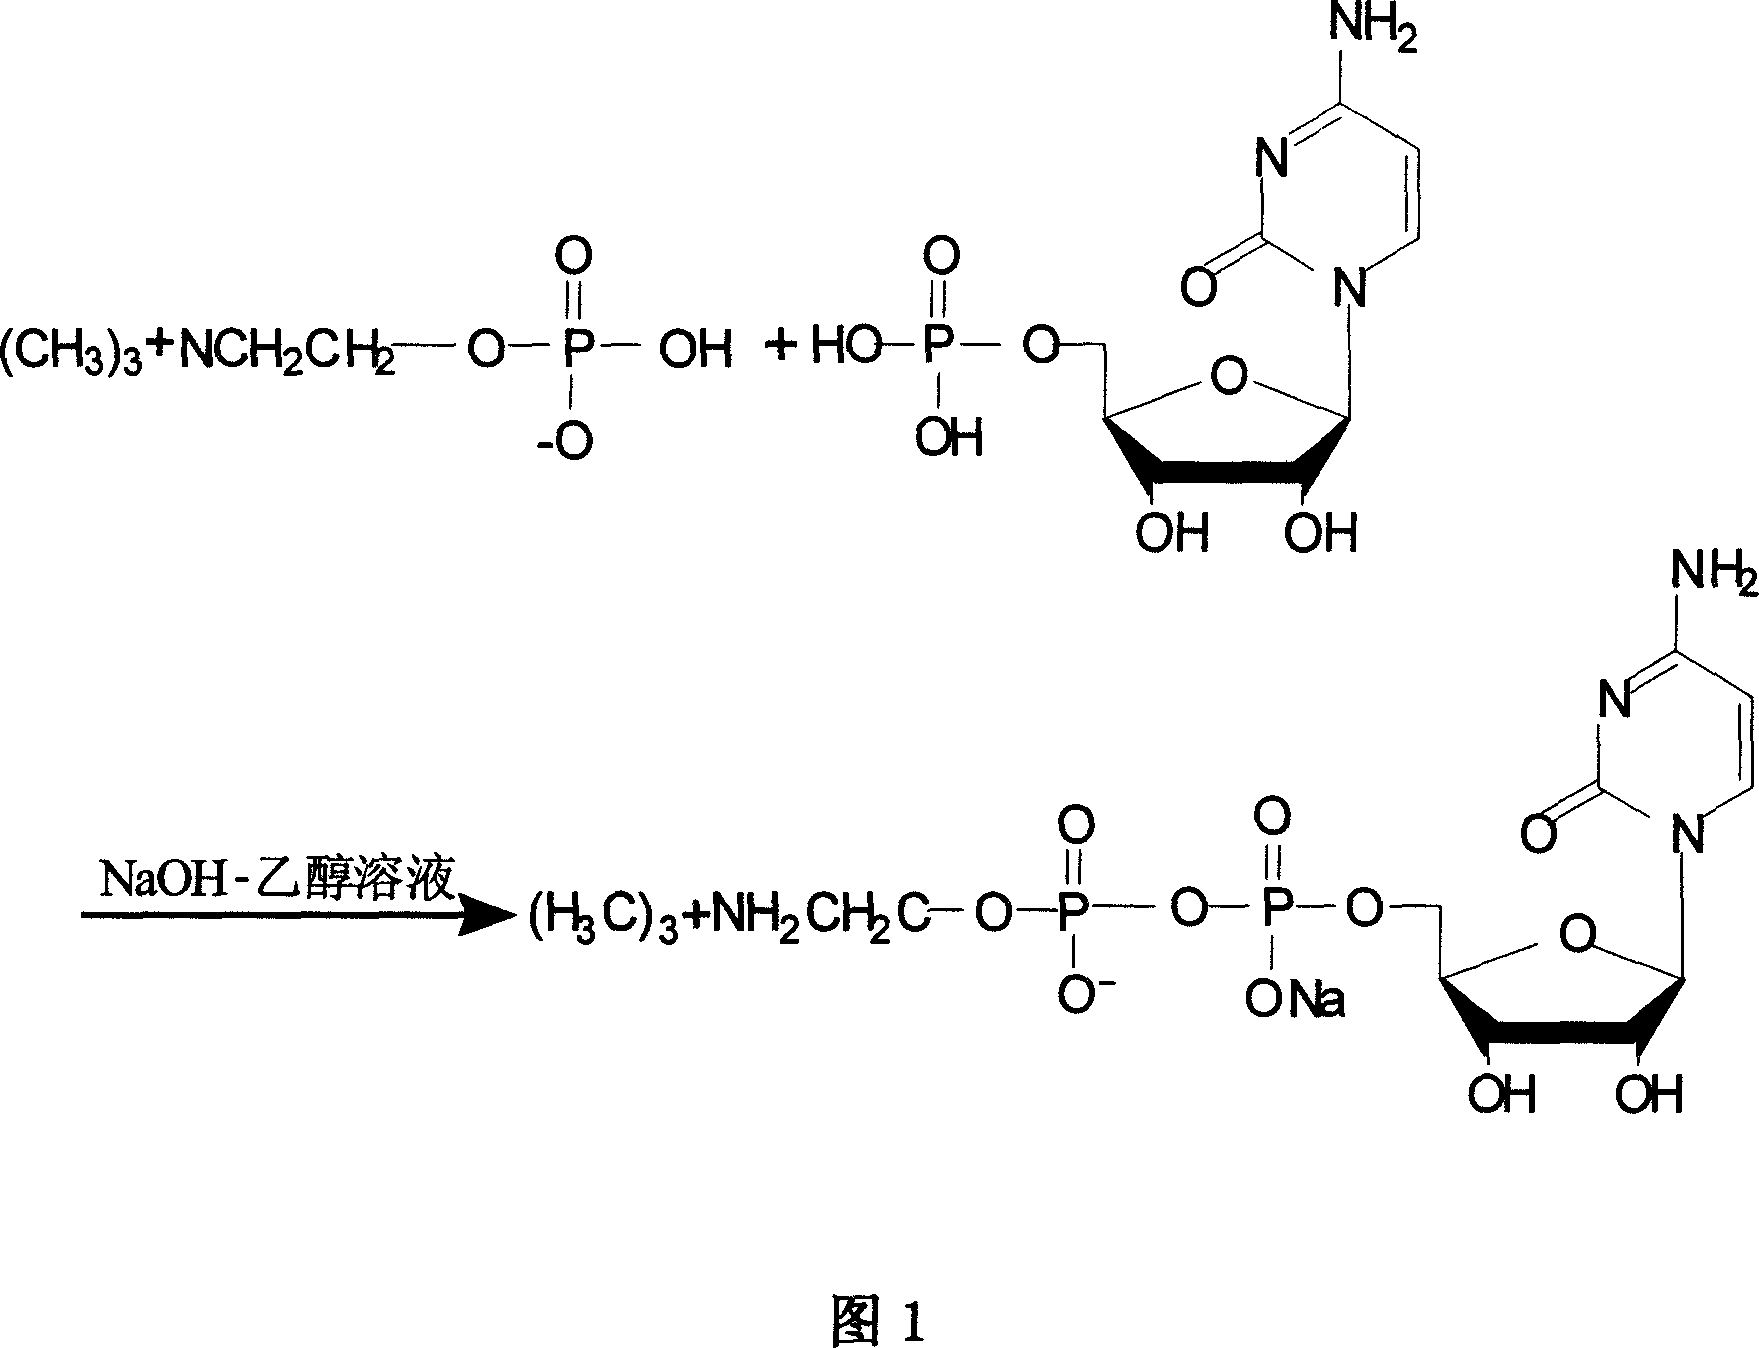 Process for preparing citicoline sodium